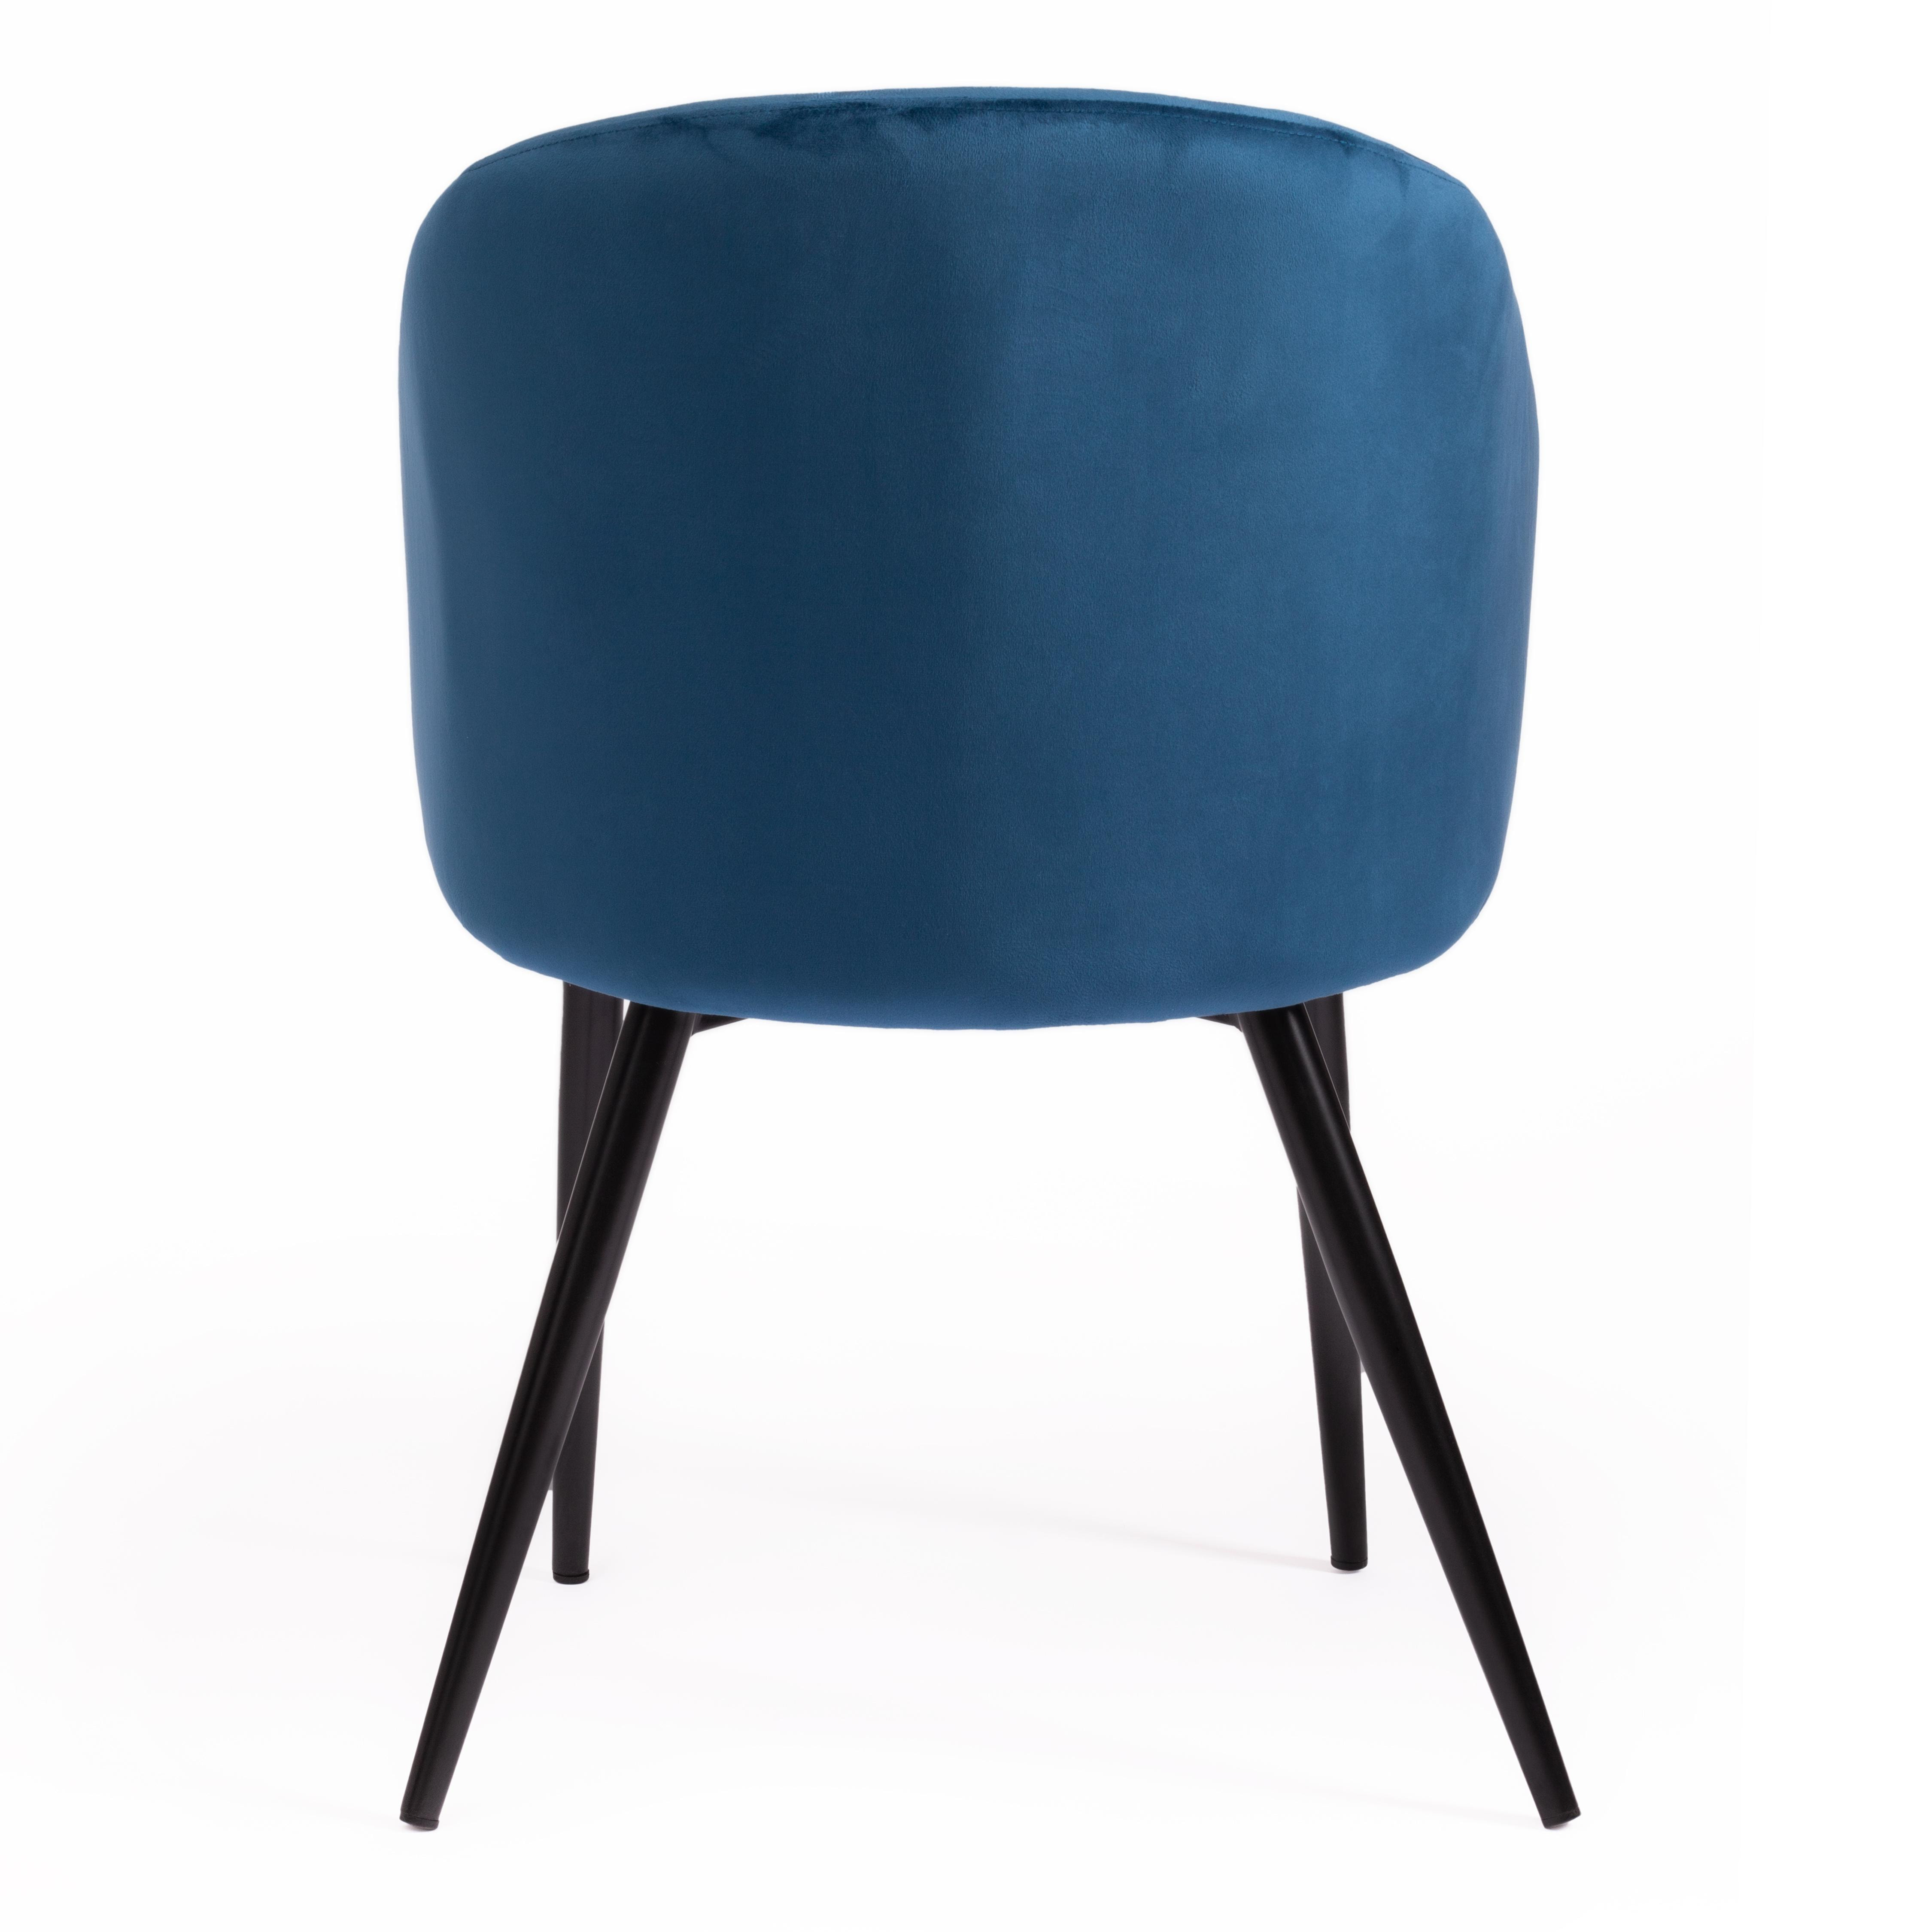 Кресло LA FONTAIN (mod. 004) вельвет/металл, 60 х 57 х 84 см , синий (HLR 63)/черный